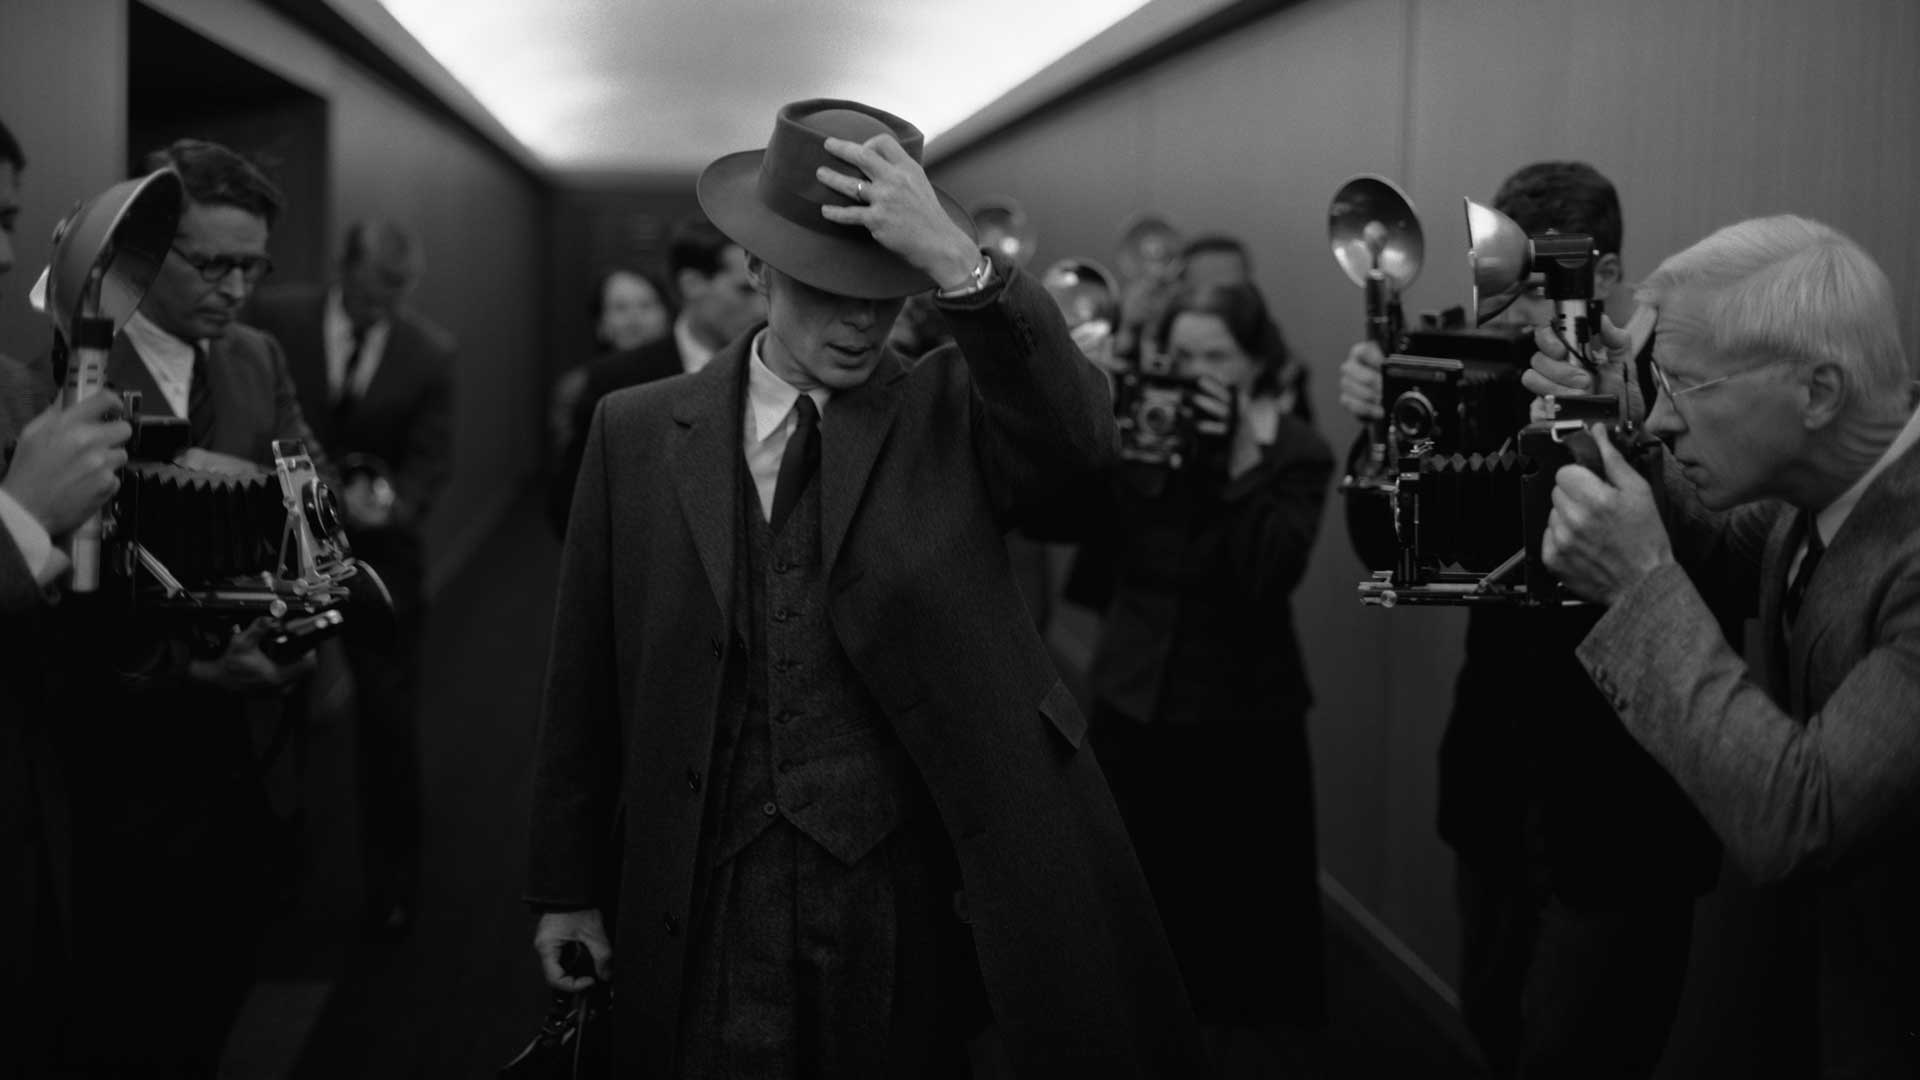 کیلیان مورفی در نقش جولیوس رابرت اوپنهایمر، پدر بمب اتمی، در اوپنهایمر به نویسندگی و کارگردانی کریستوفر نولان.